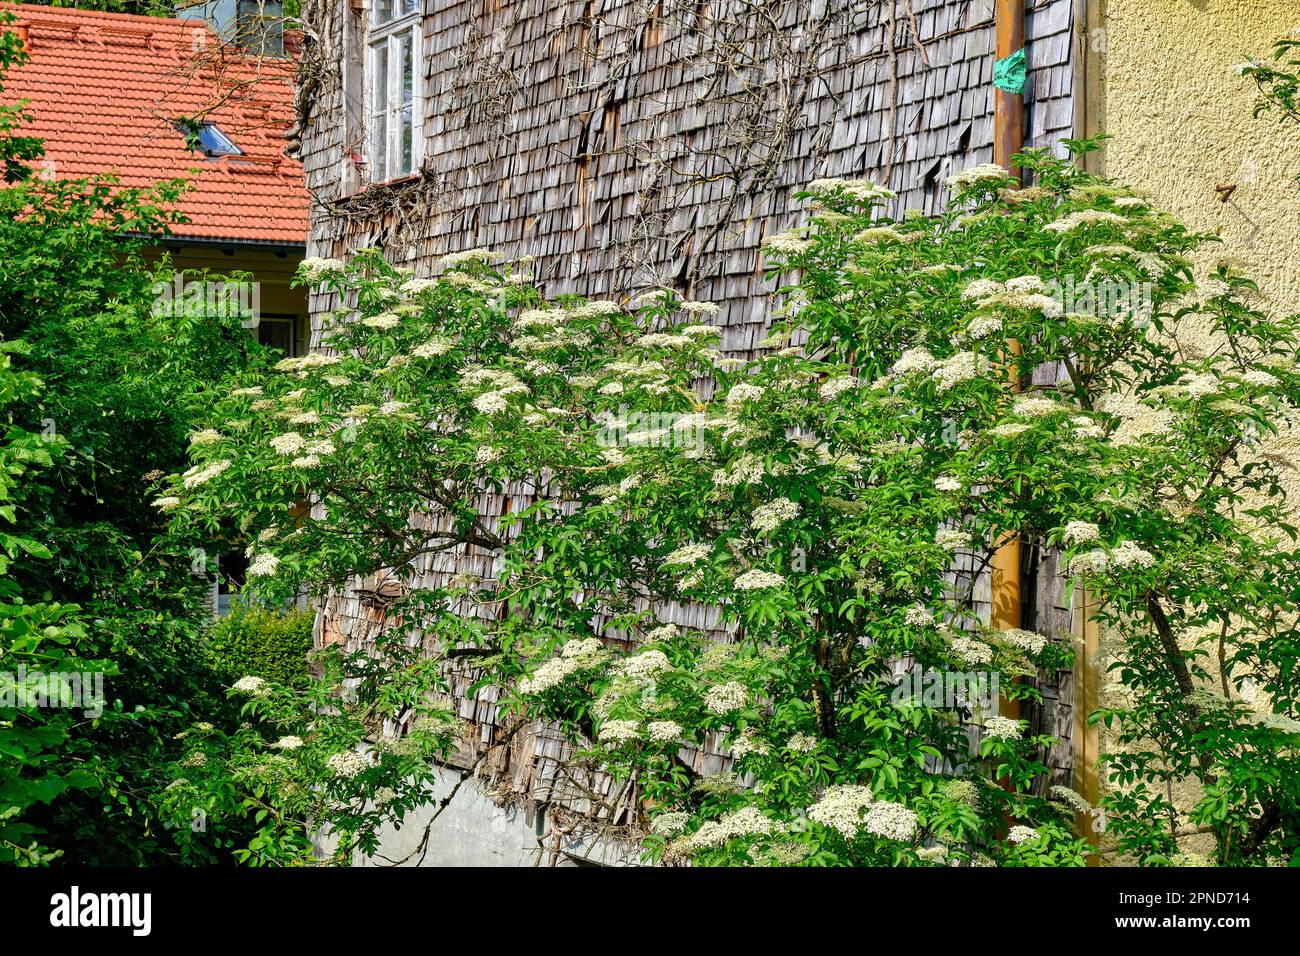 Struttura di edificio a forma di arbusto con cespuglio fiorito di fronte. Schindelgedeckte Gebäudestruktur mit blühendem Holunderbusch davor. Foto Stock